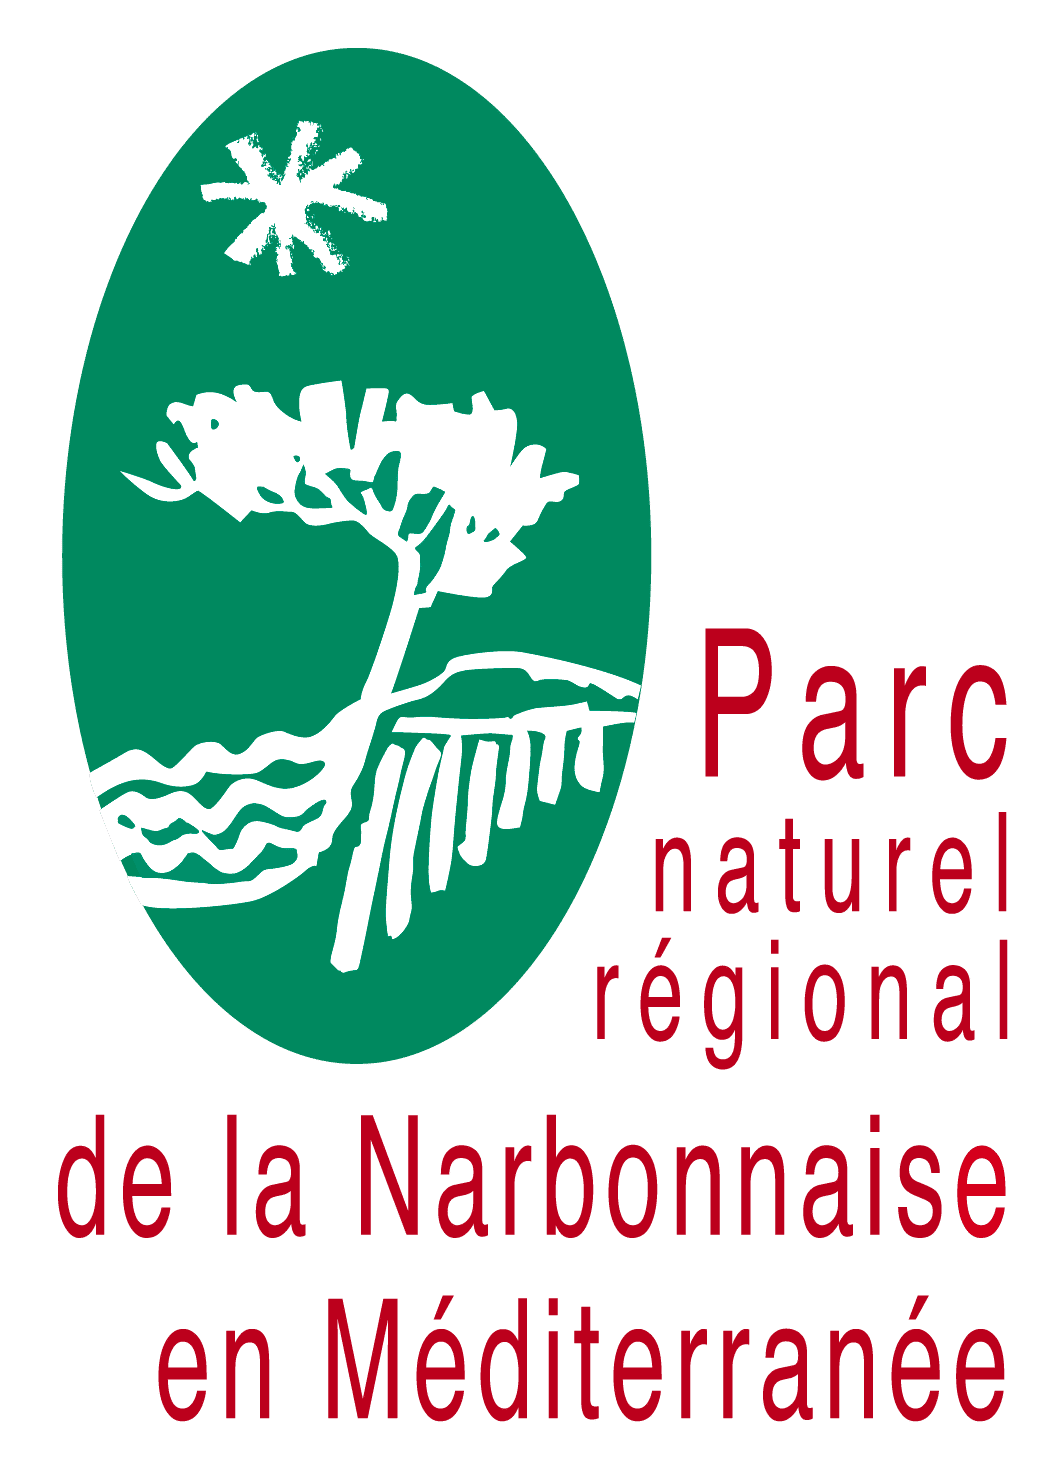 Parc naturel régional de la Narbonnaise en Méditerranée